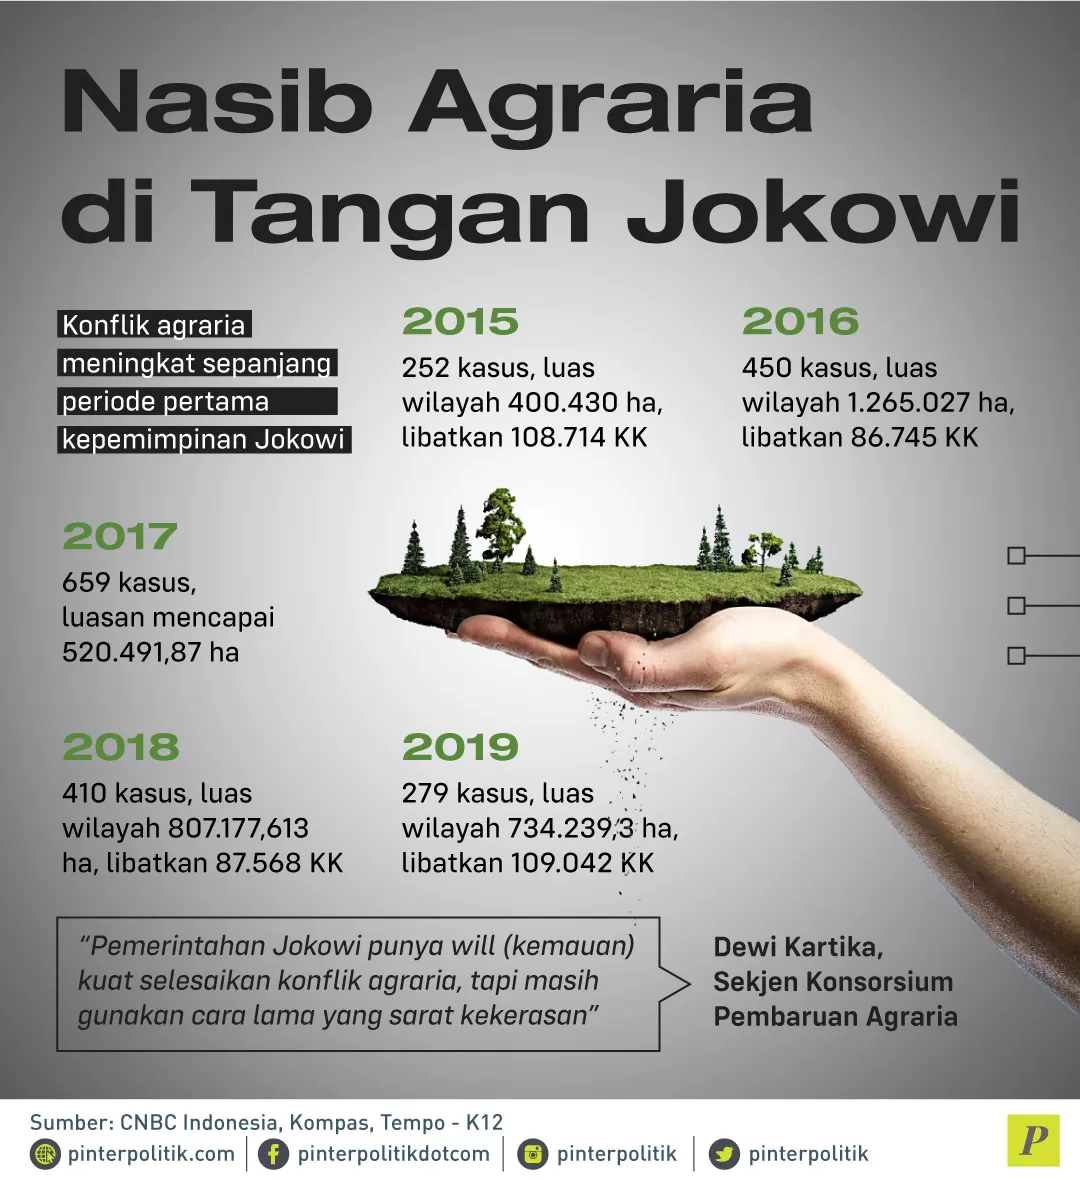 Konflik agraria meningkat sepanjang kepemimpinan Jokowi